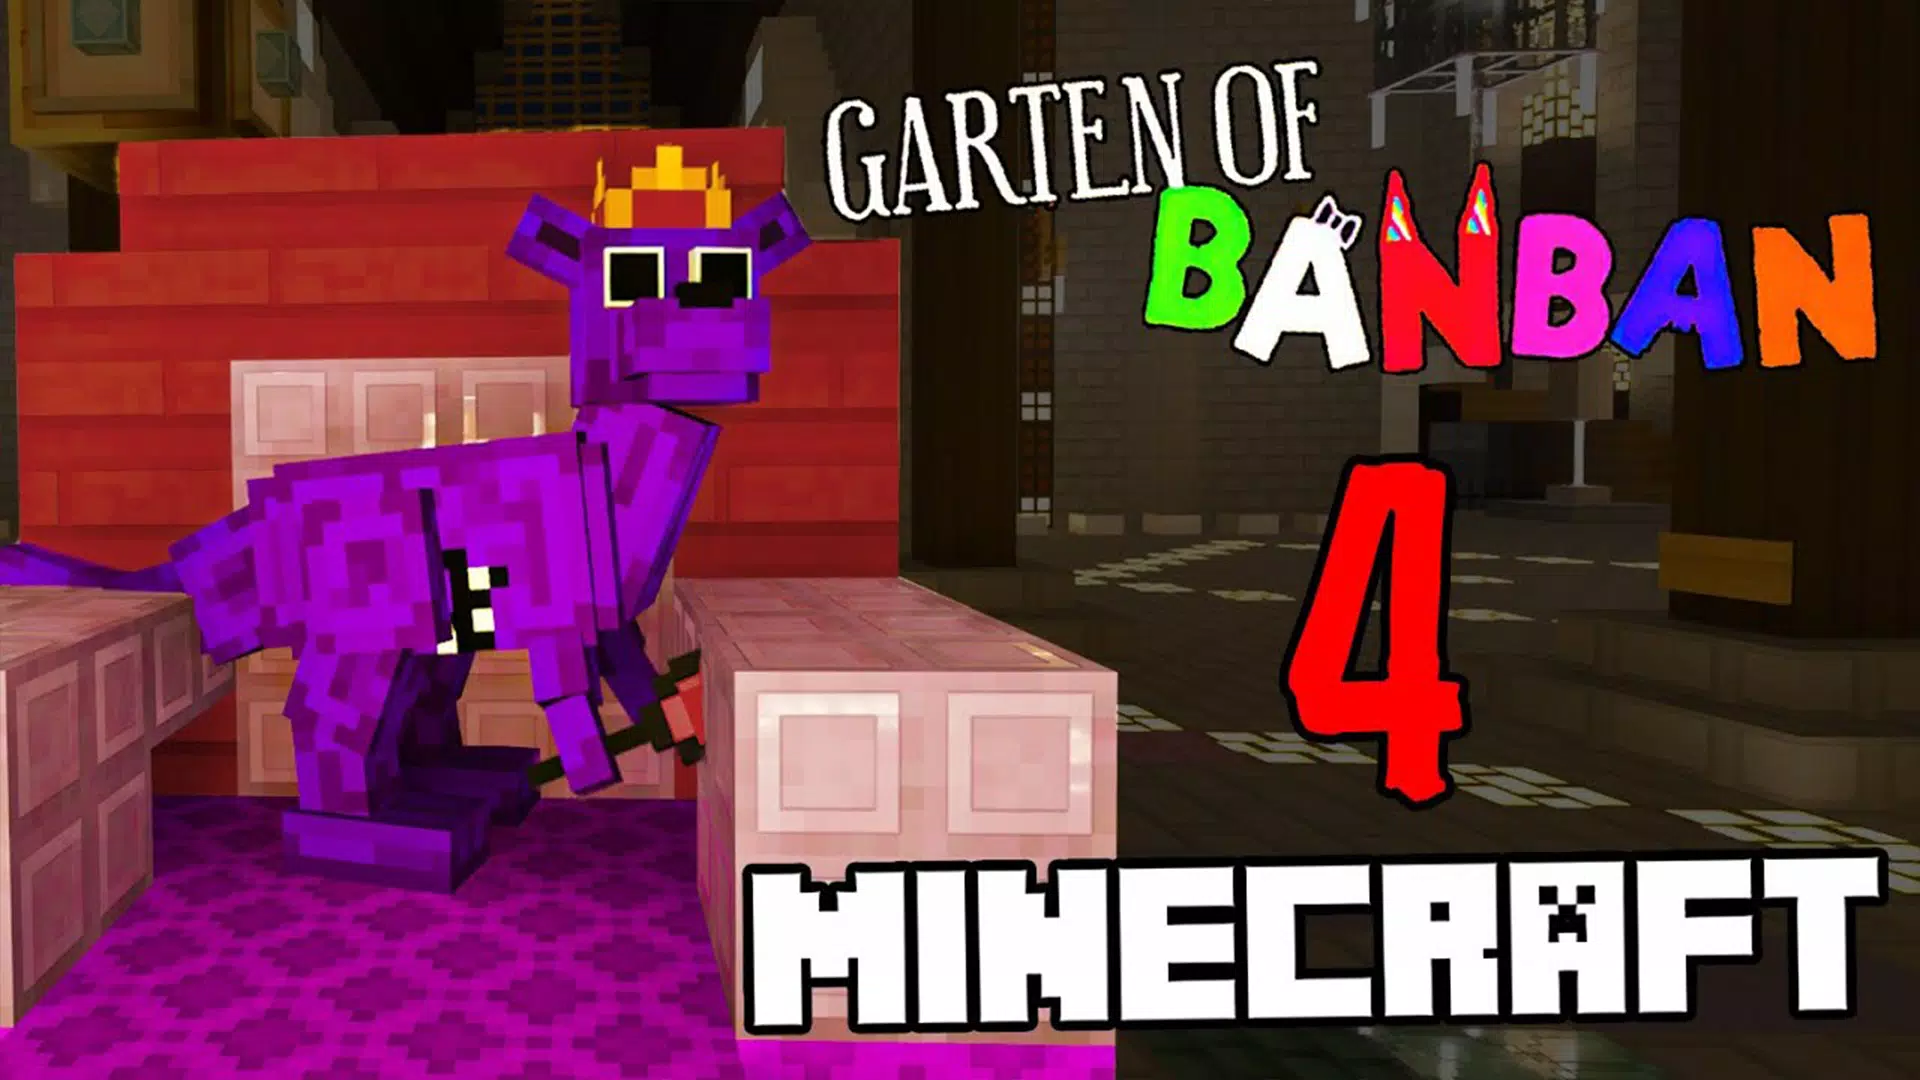 Garten of Banban 4 Minecraft para Android - Download